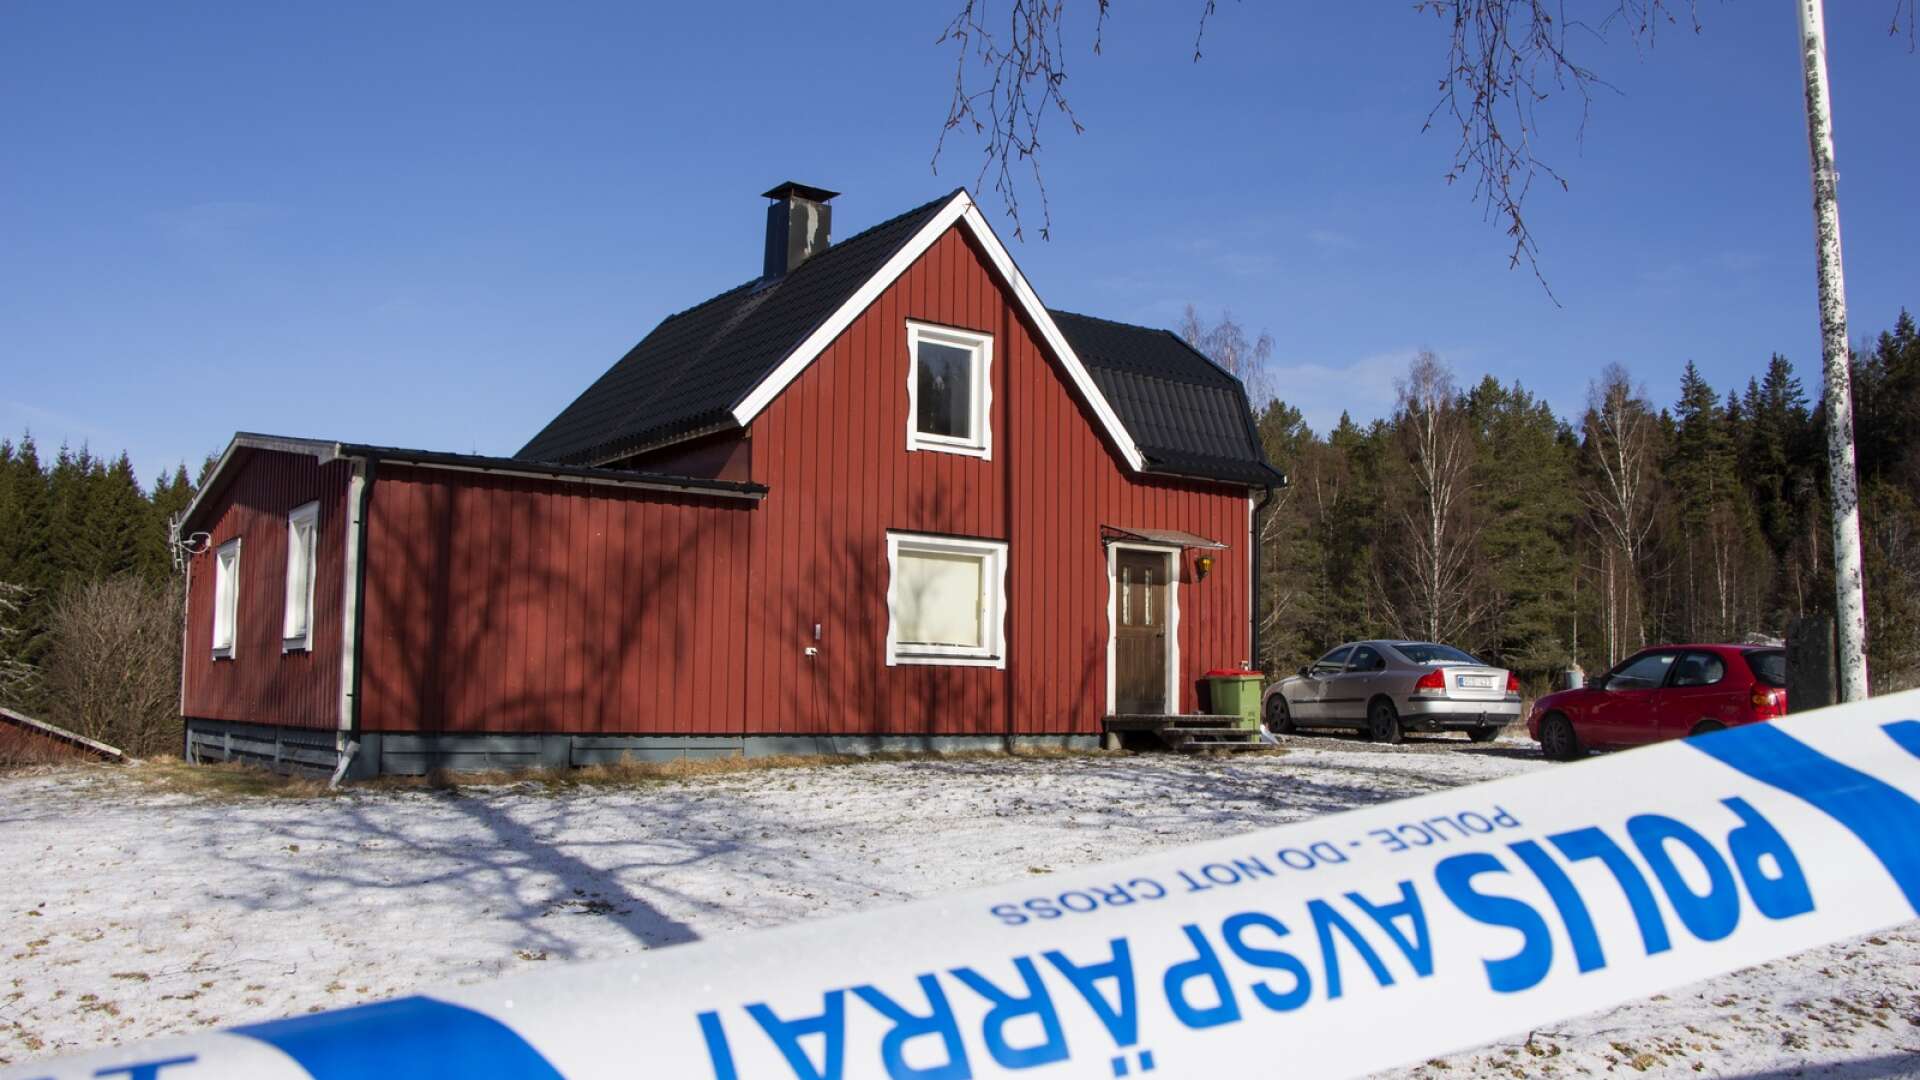 Huset i Årjäng kommun där det misstänkta frysmordet tros ha ägt rum.